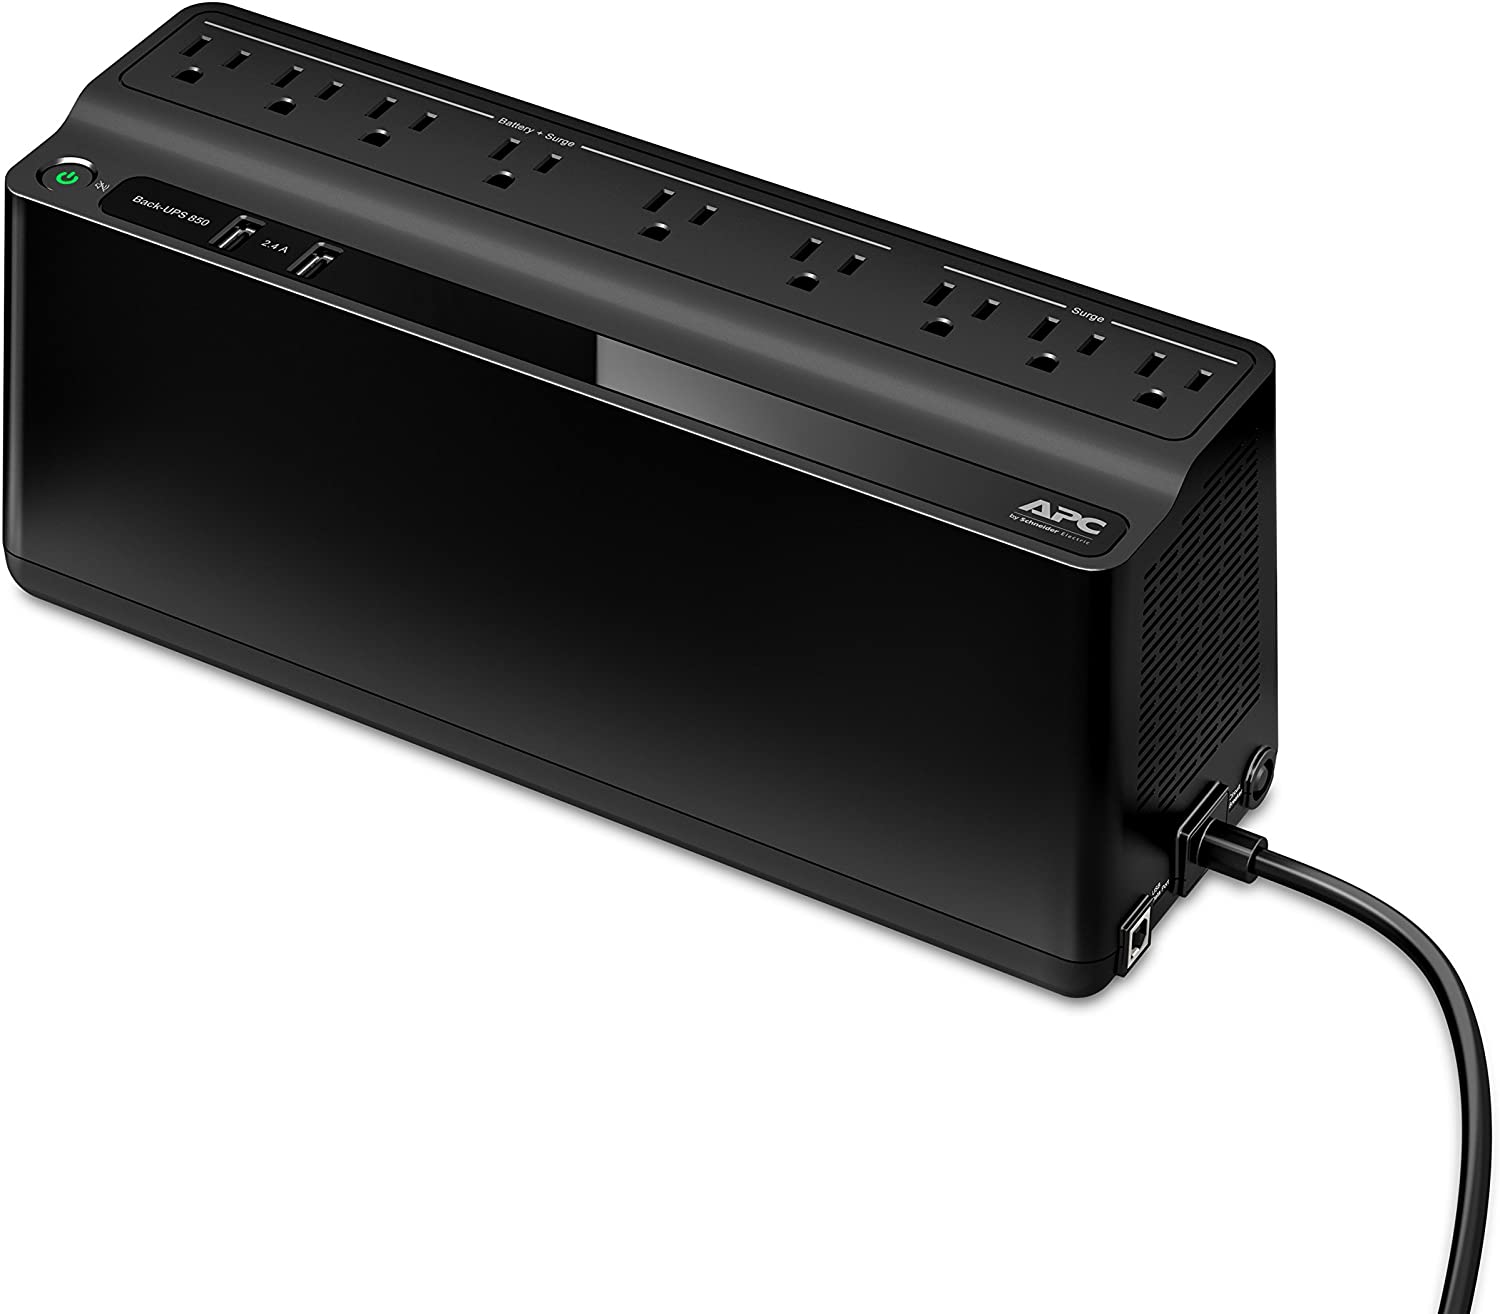 APC UPS Battery Backup and Surge Protector – Just $89.99 at Amazon